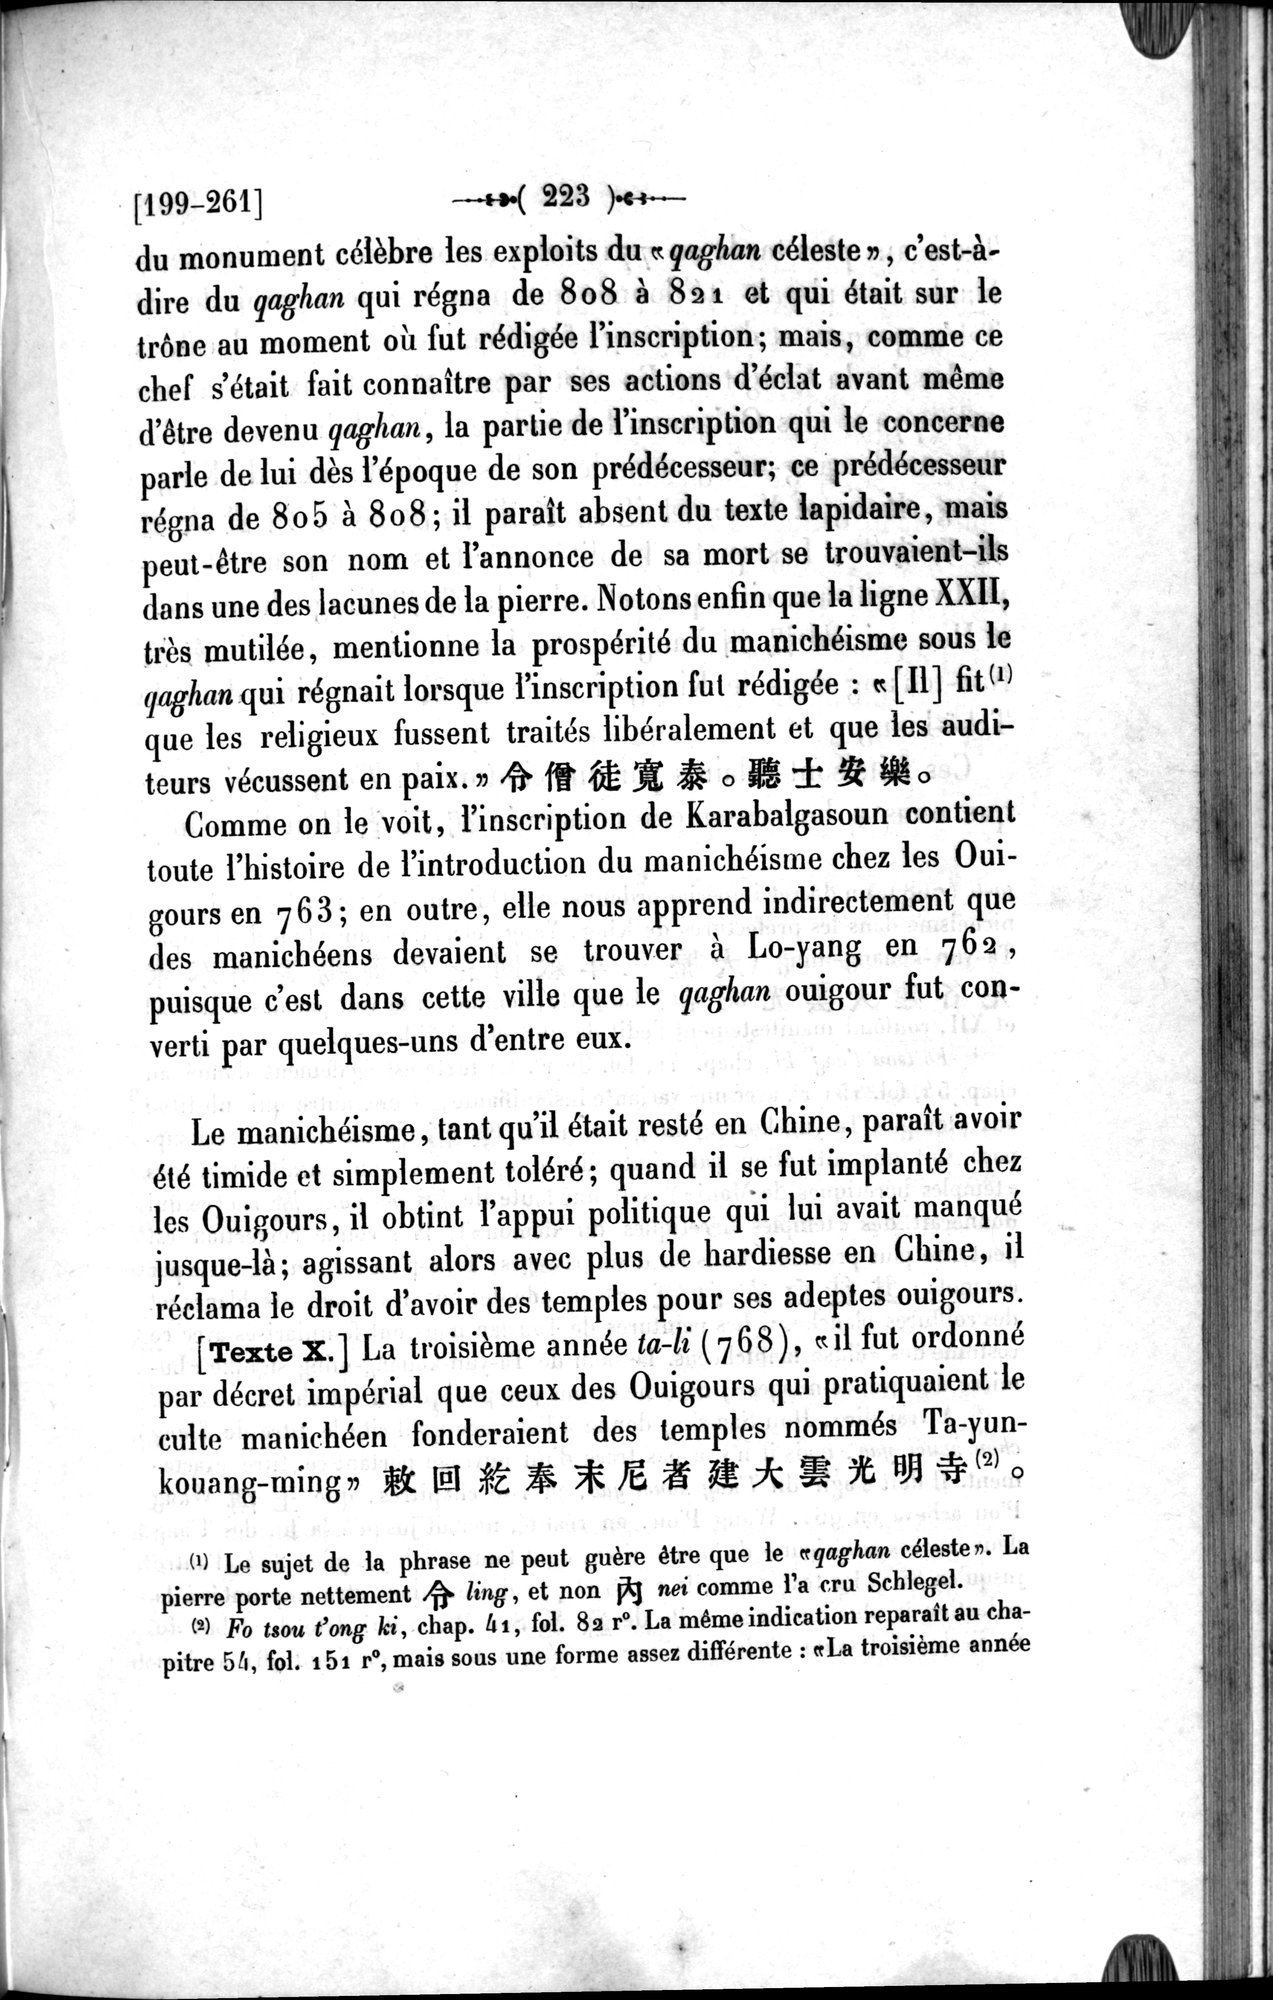 Un traité manichéen retrouvé en Chine : vol.1 / Page 233 (Grayscale High Resolution Image)